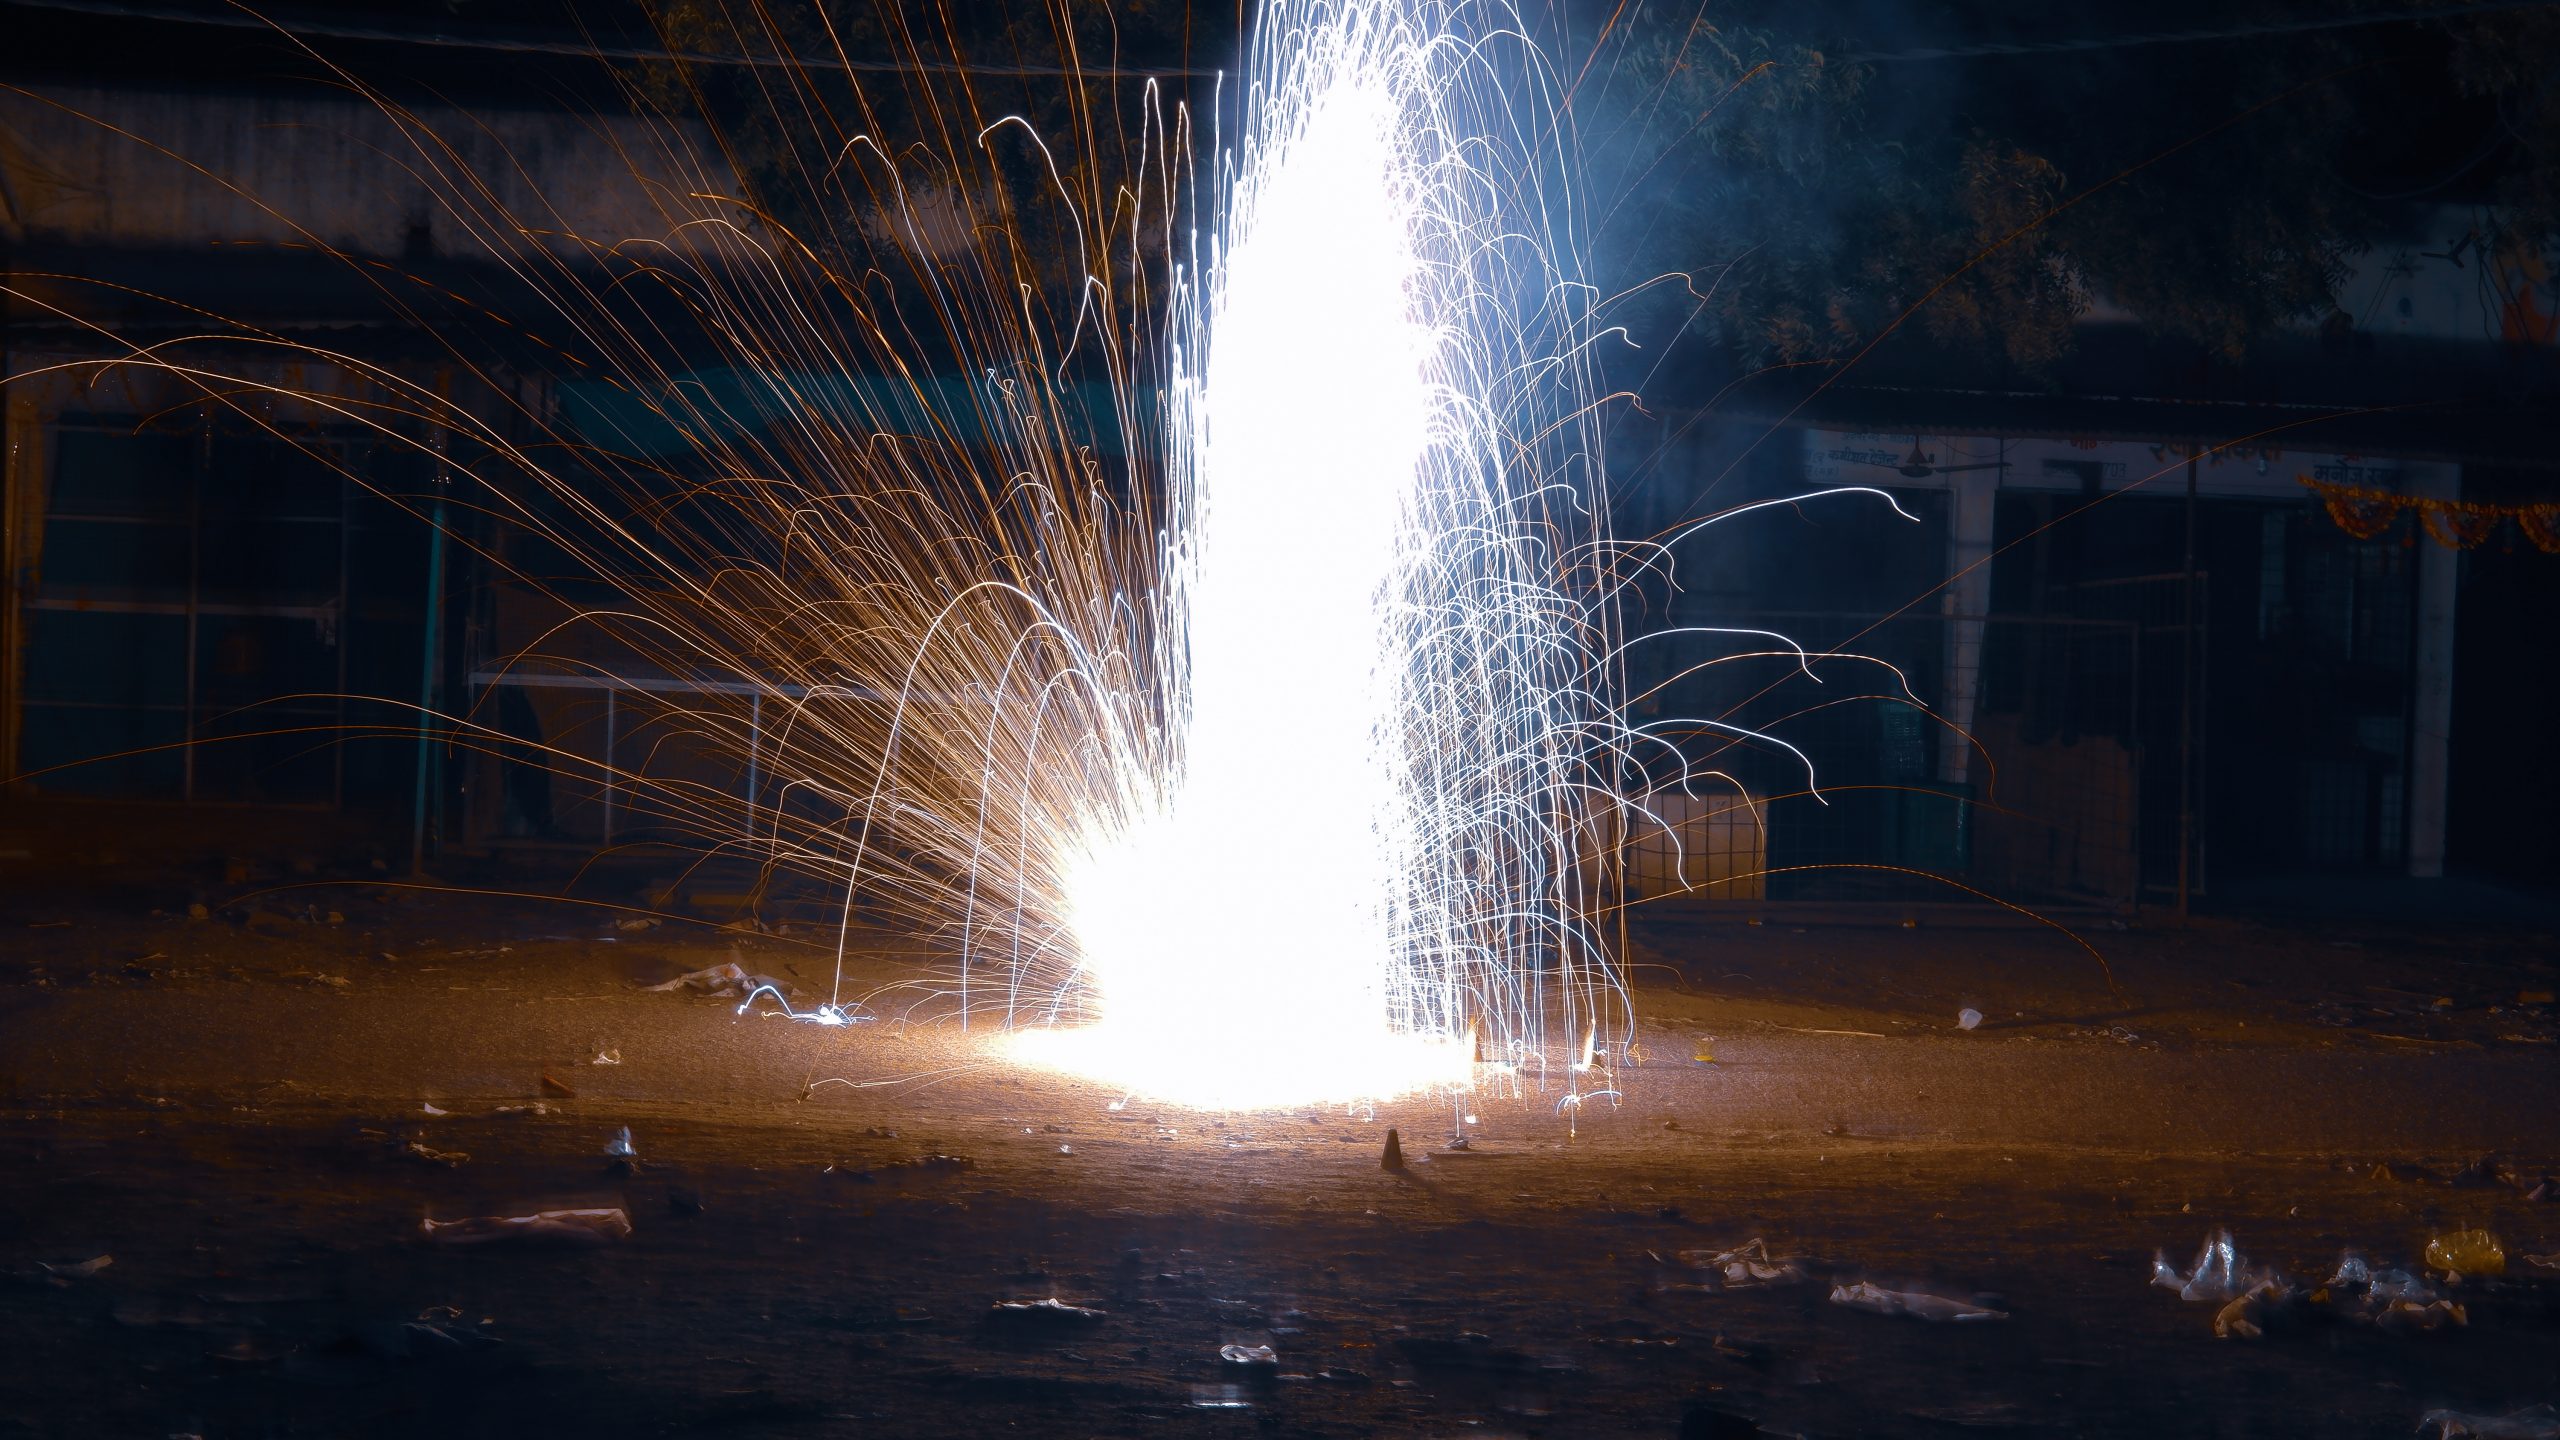 A firecracker sparkling